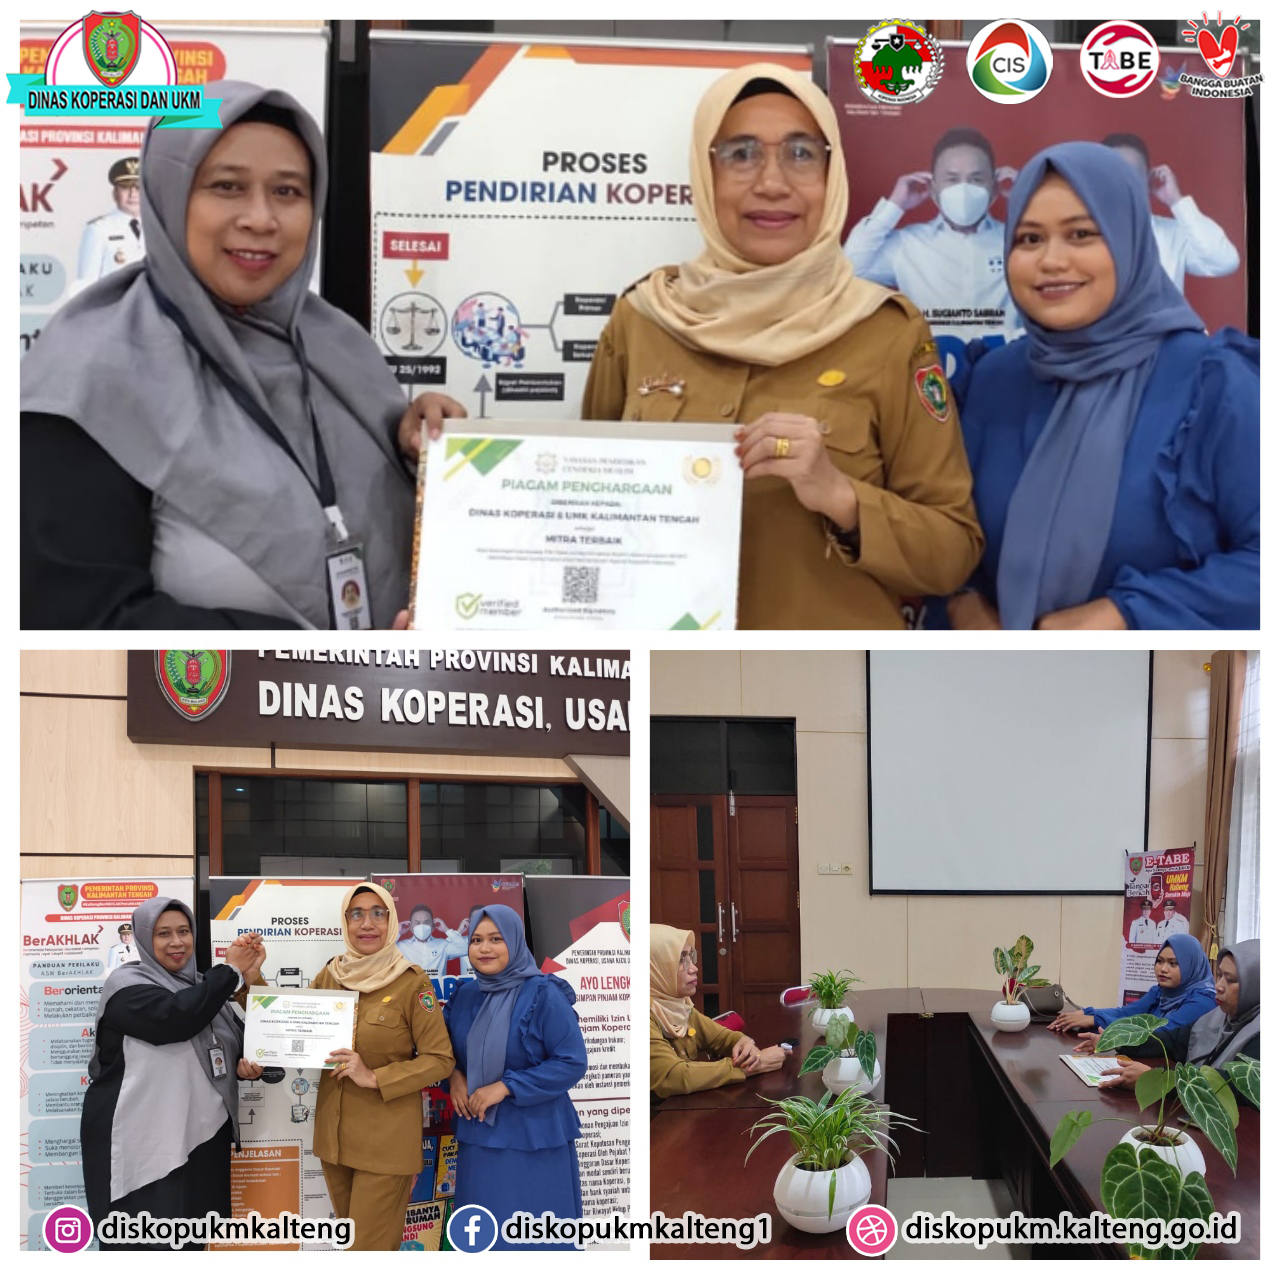 Dinas Koperasi, Usaha Kecil dan Menengah Provinsi Kalimantan Tengah menerima penghargaan sebagai \"Mitra Terbaik\" dari P3H Halal Center Cendekia Musl